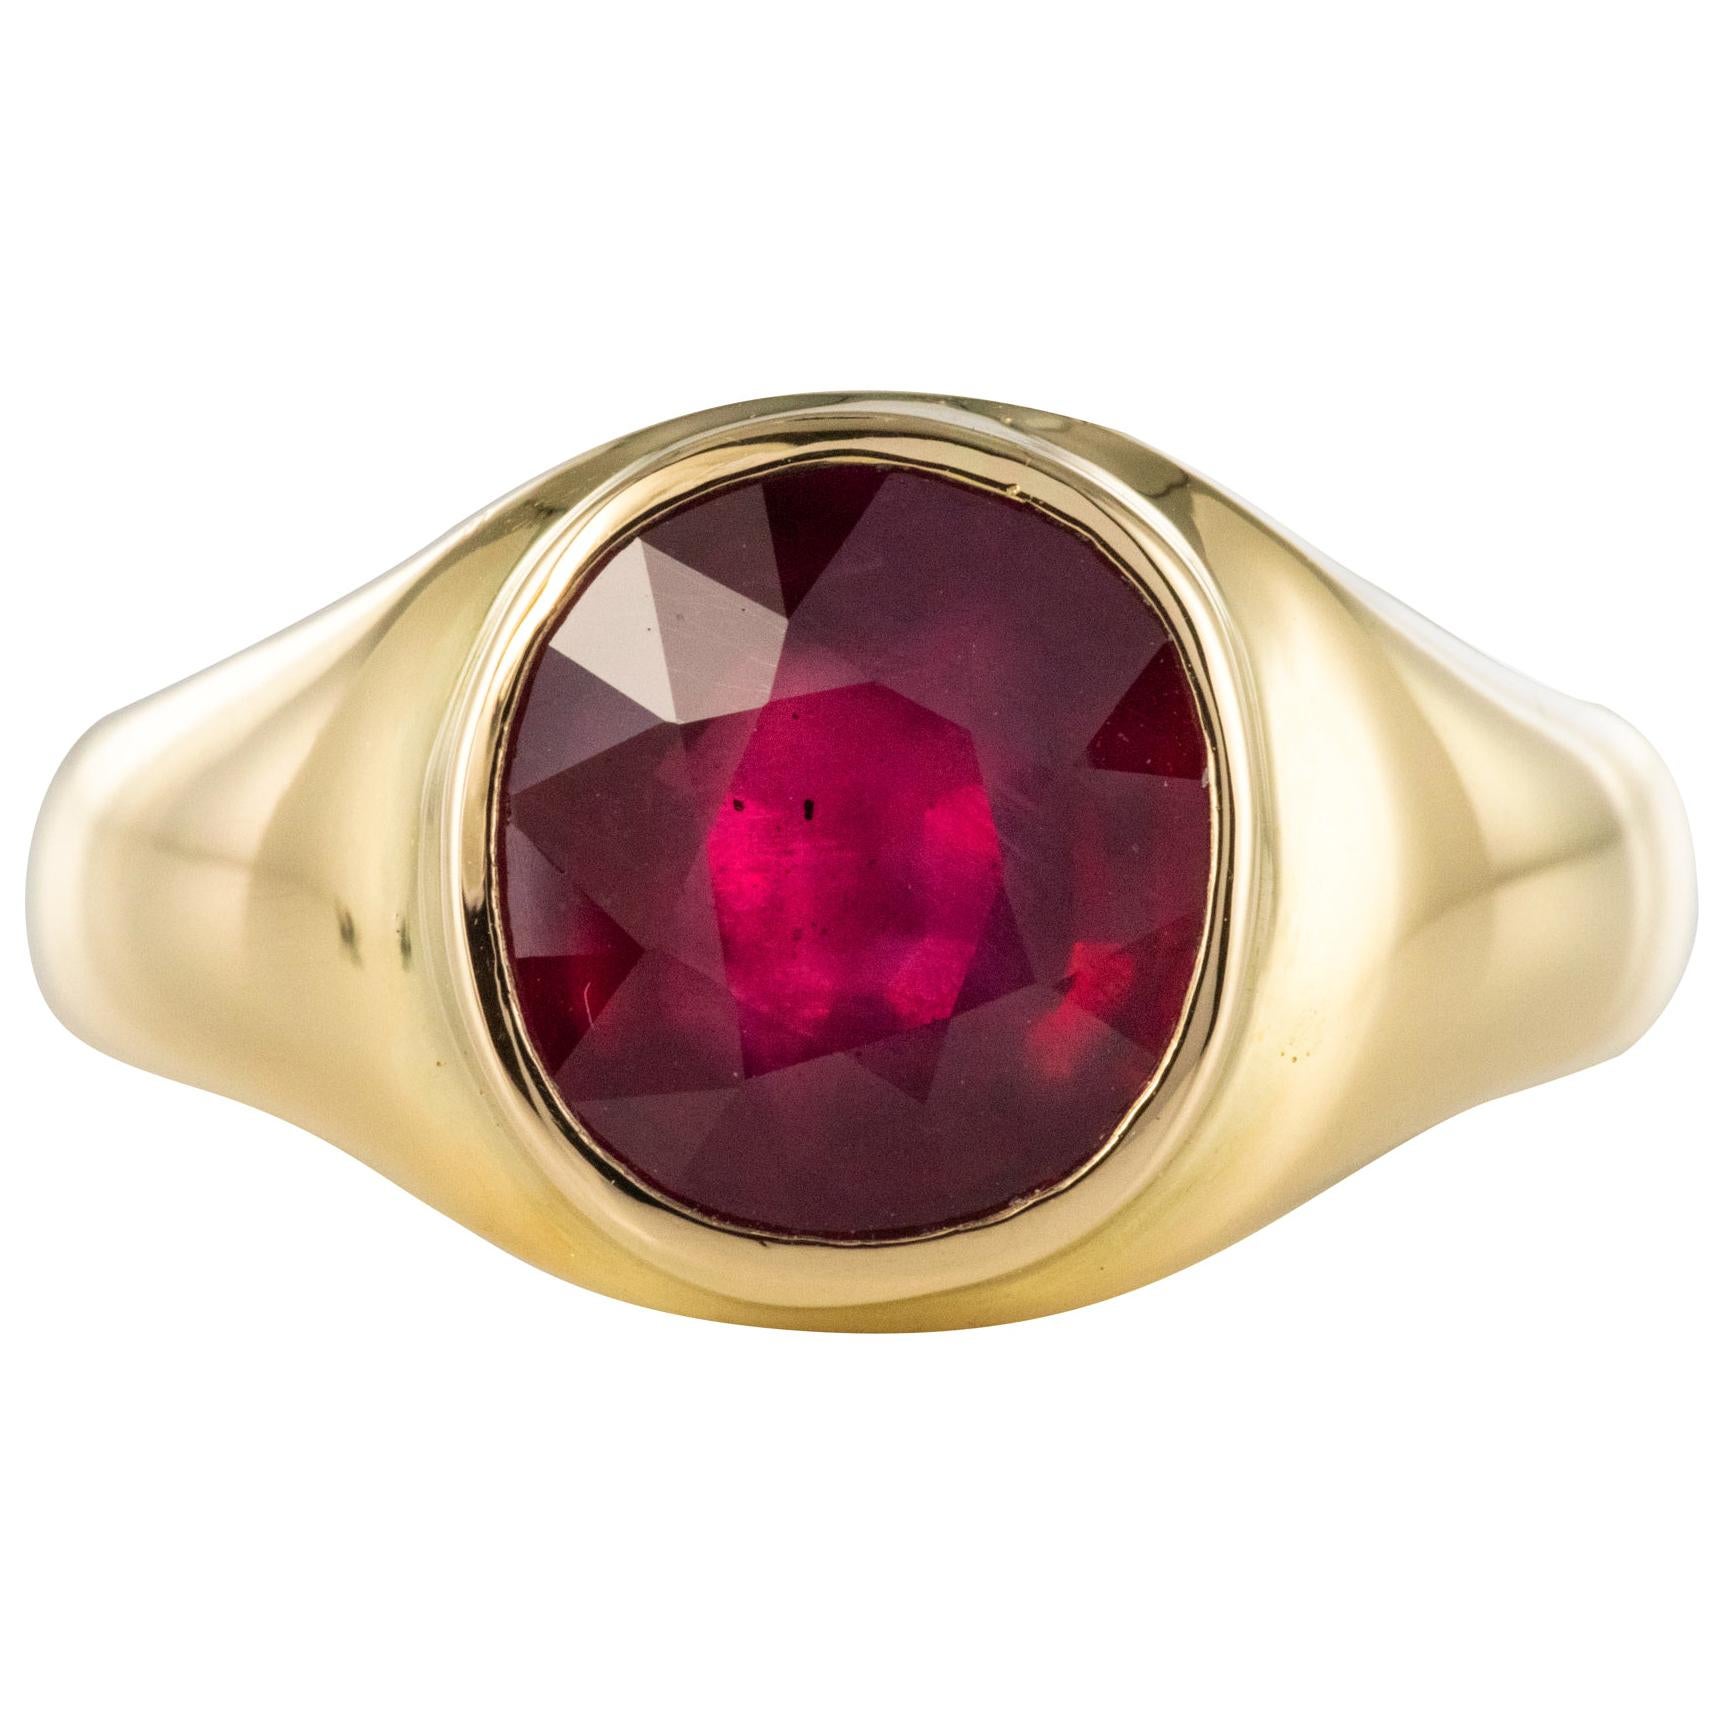 1960s 5.05 Carat Ruby 18 Karat Yellow Gold Bangle Ring